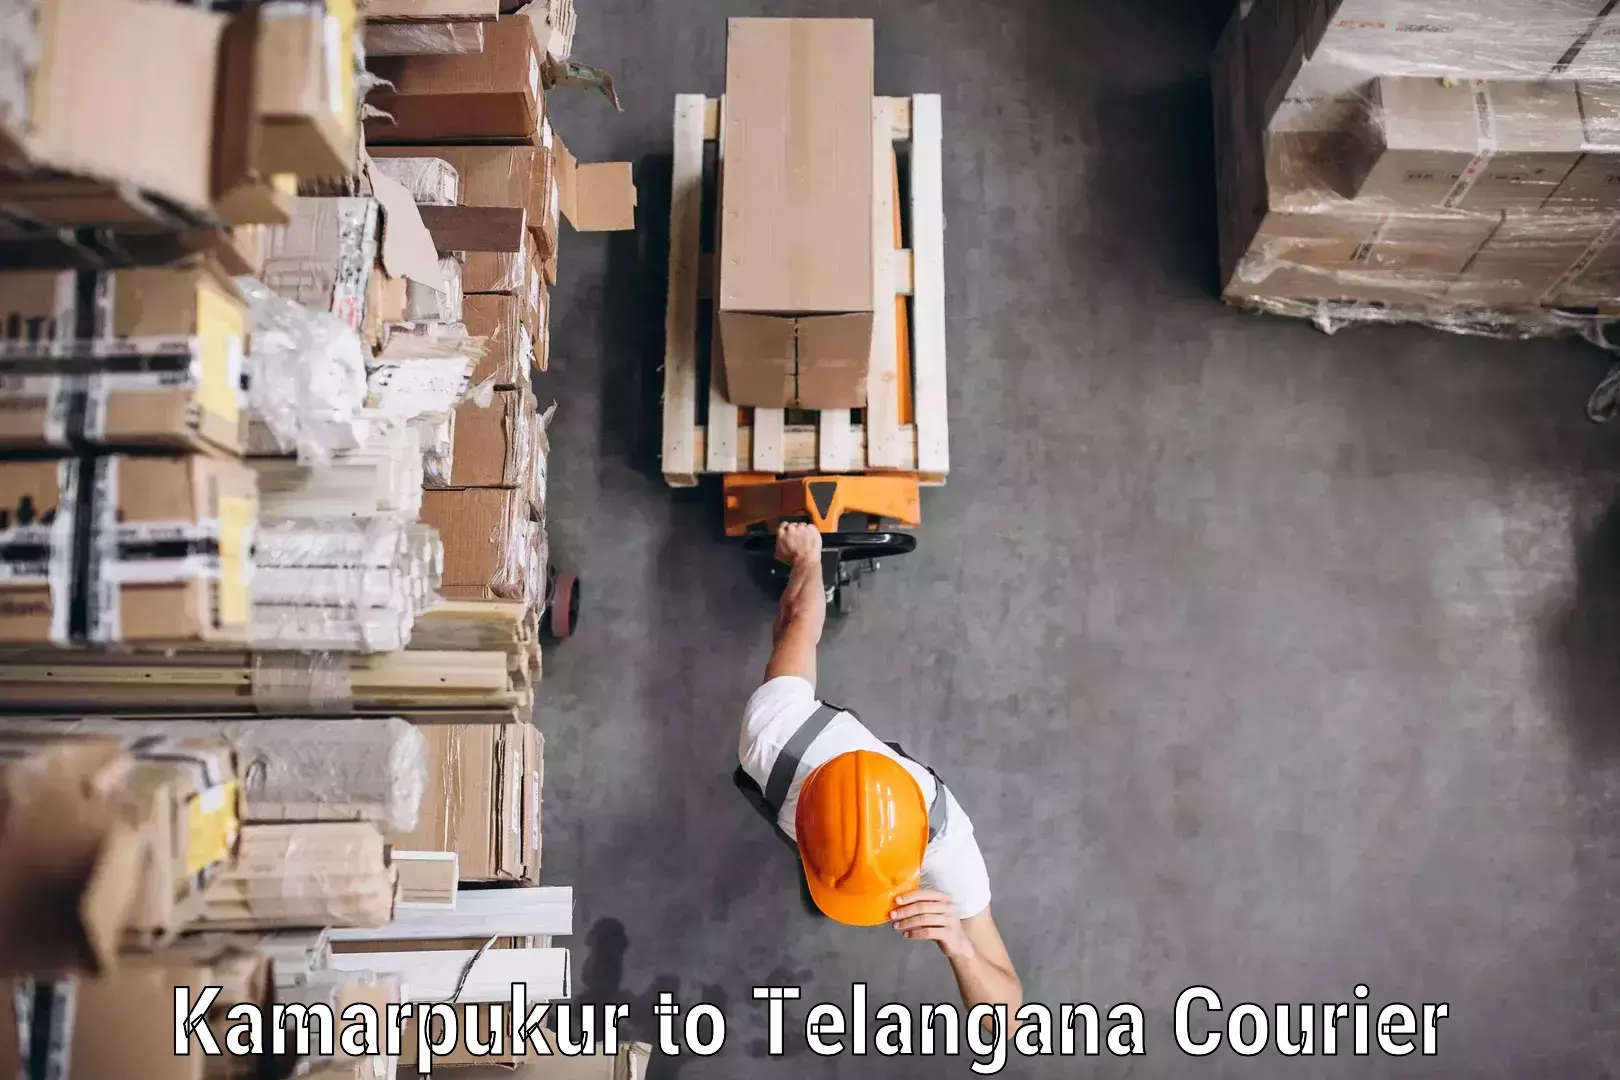 Bulk courier orders Kamarpukur to Telangana